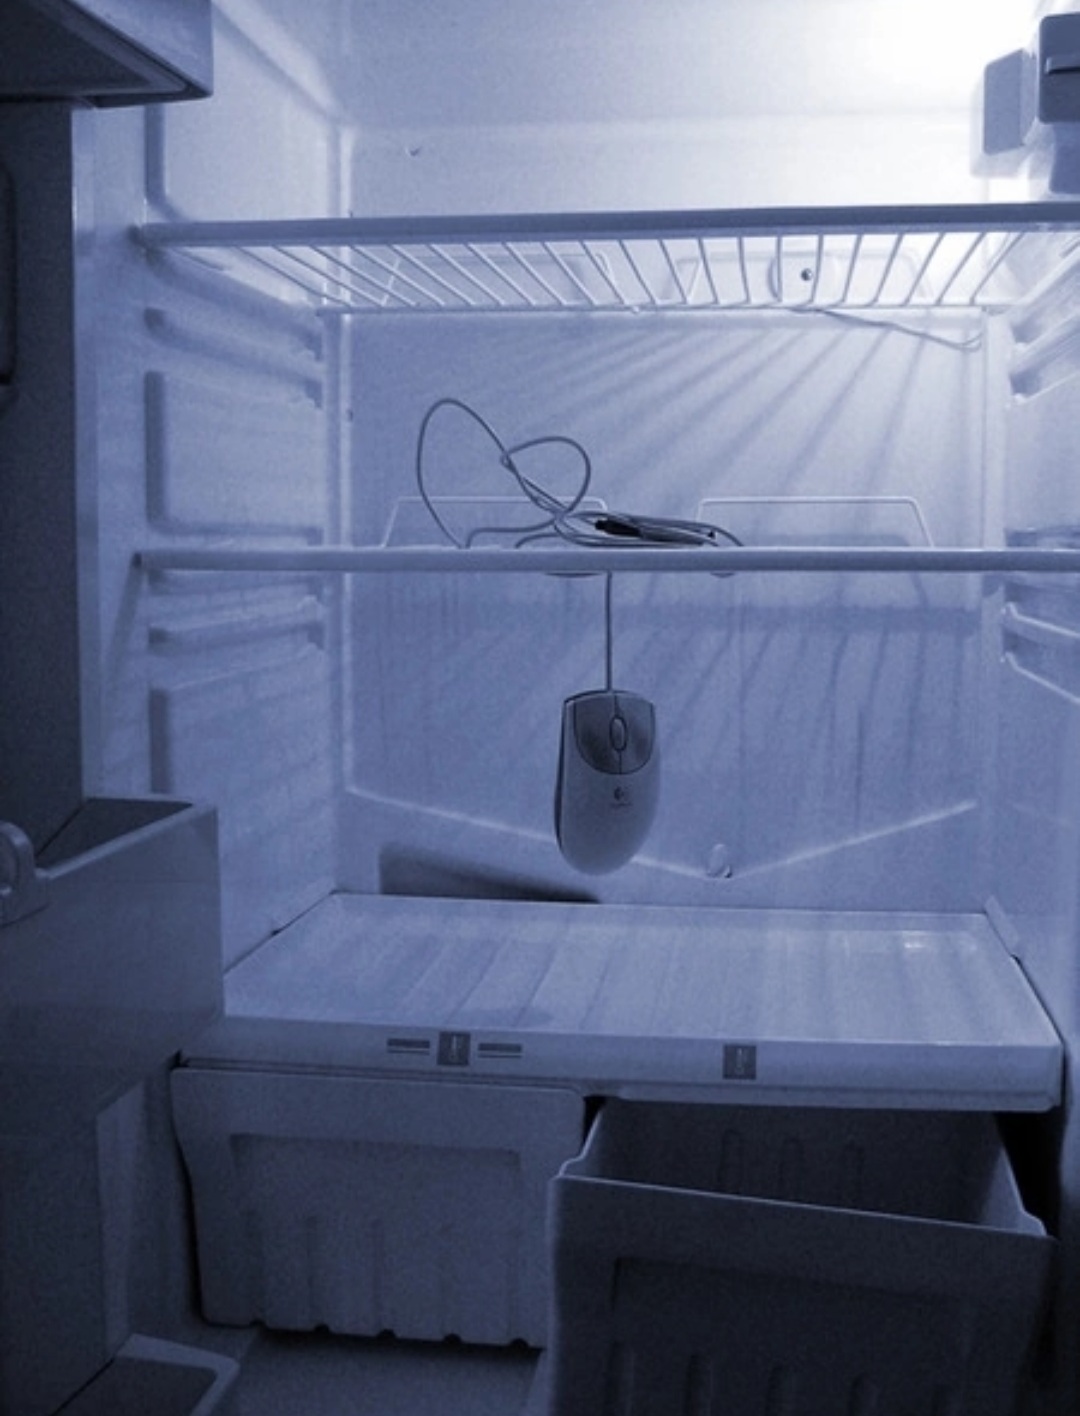 Холодильник пустой все заметили фото